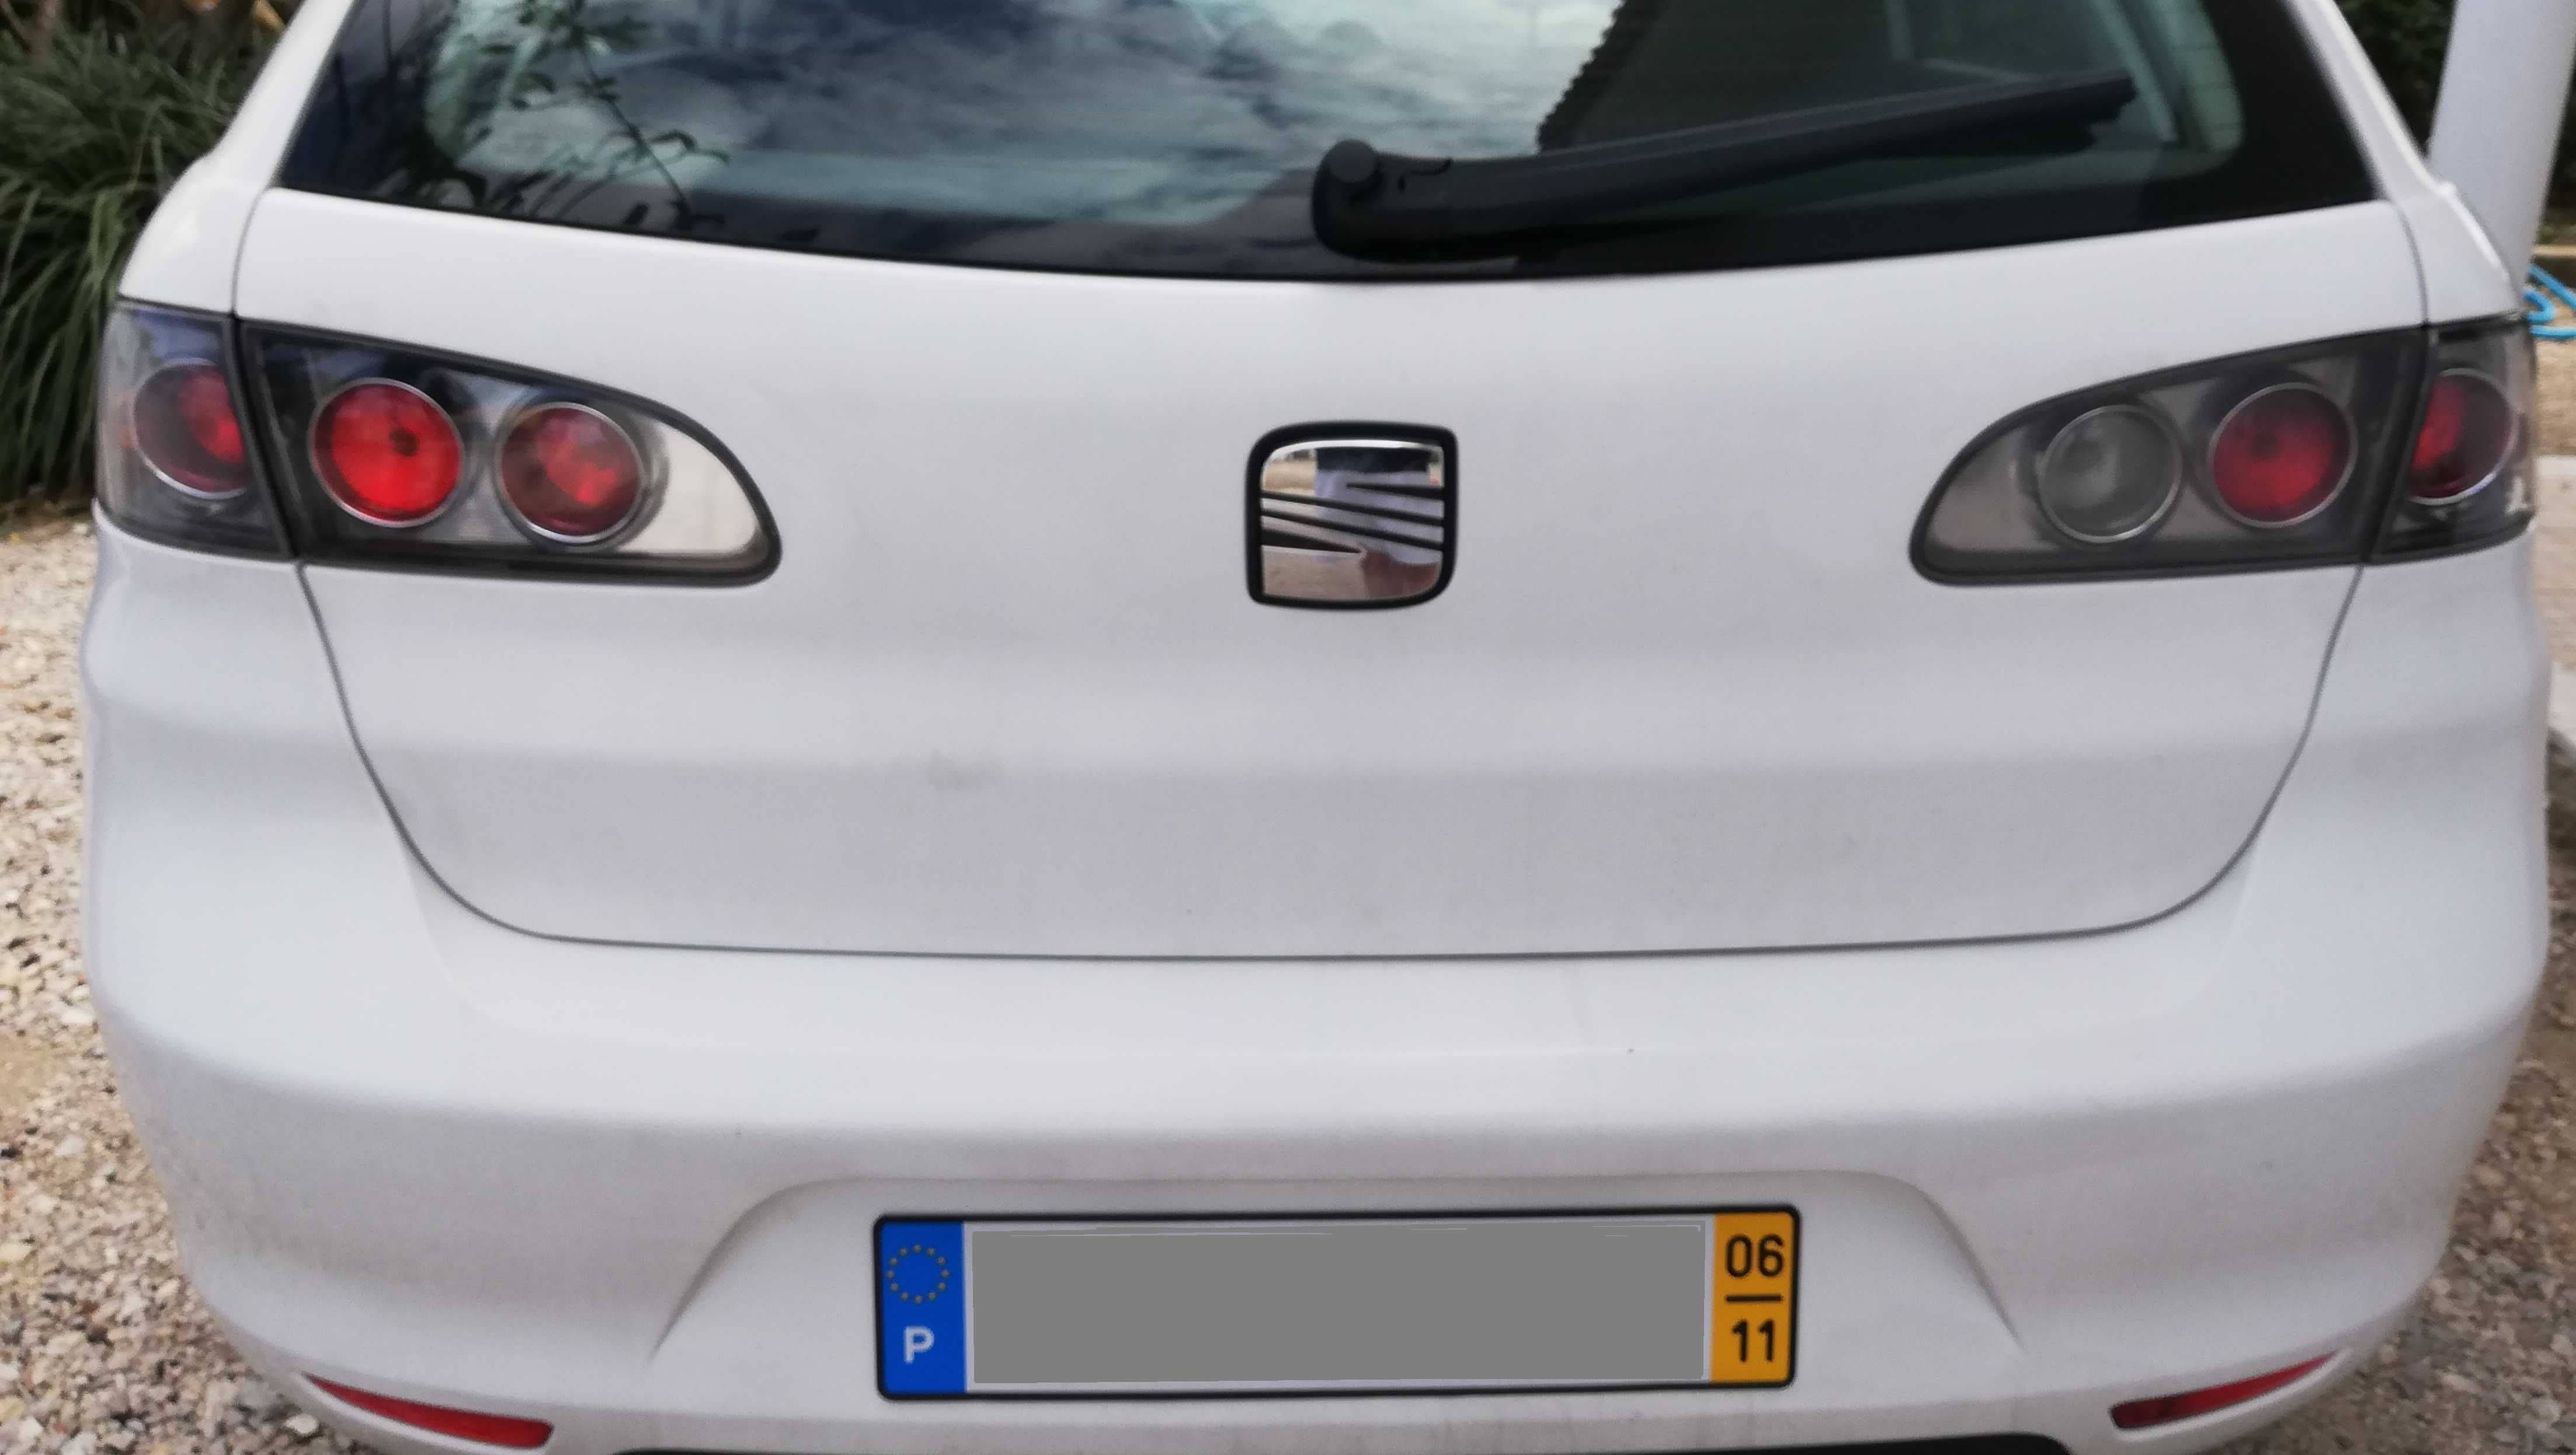 Parachoques traseiro Seat Ibiza 6L